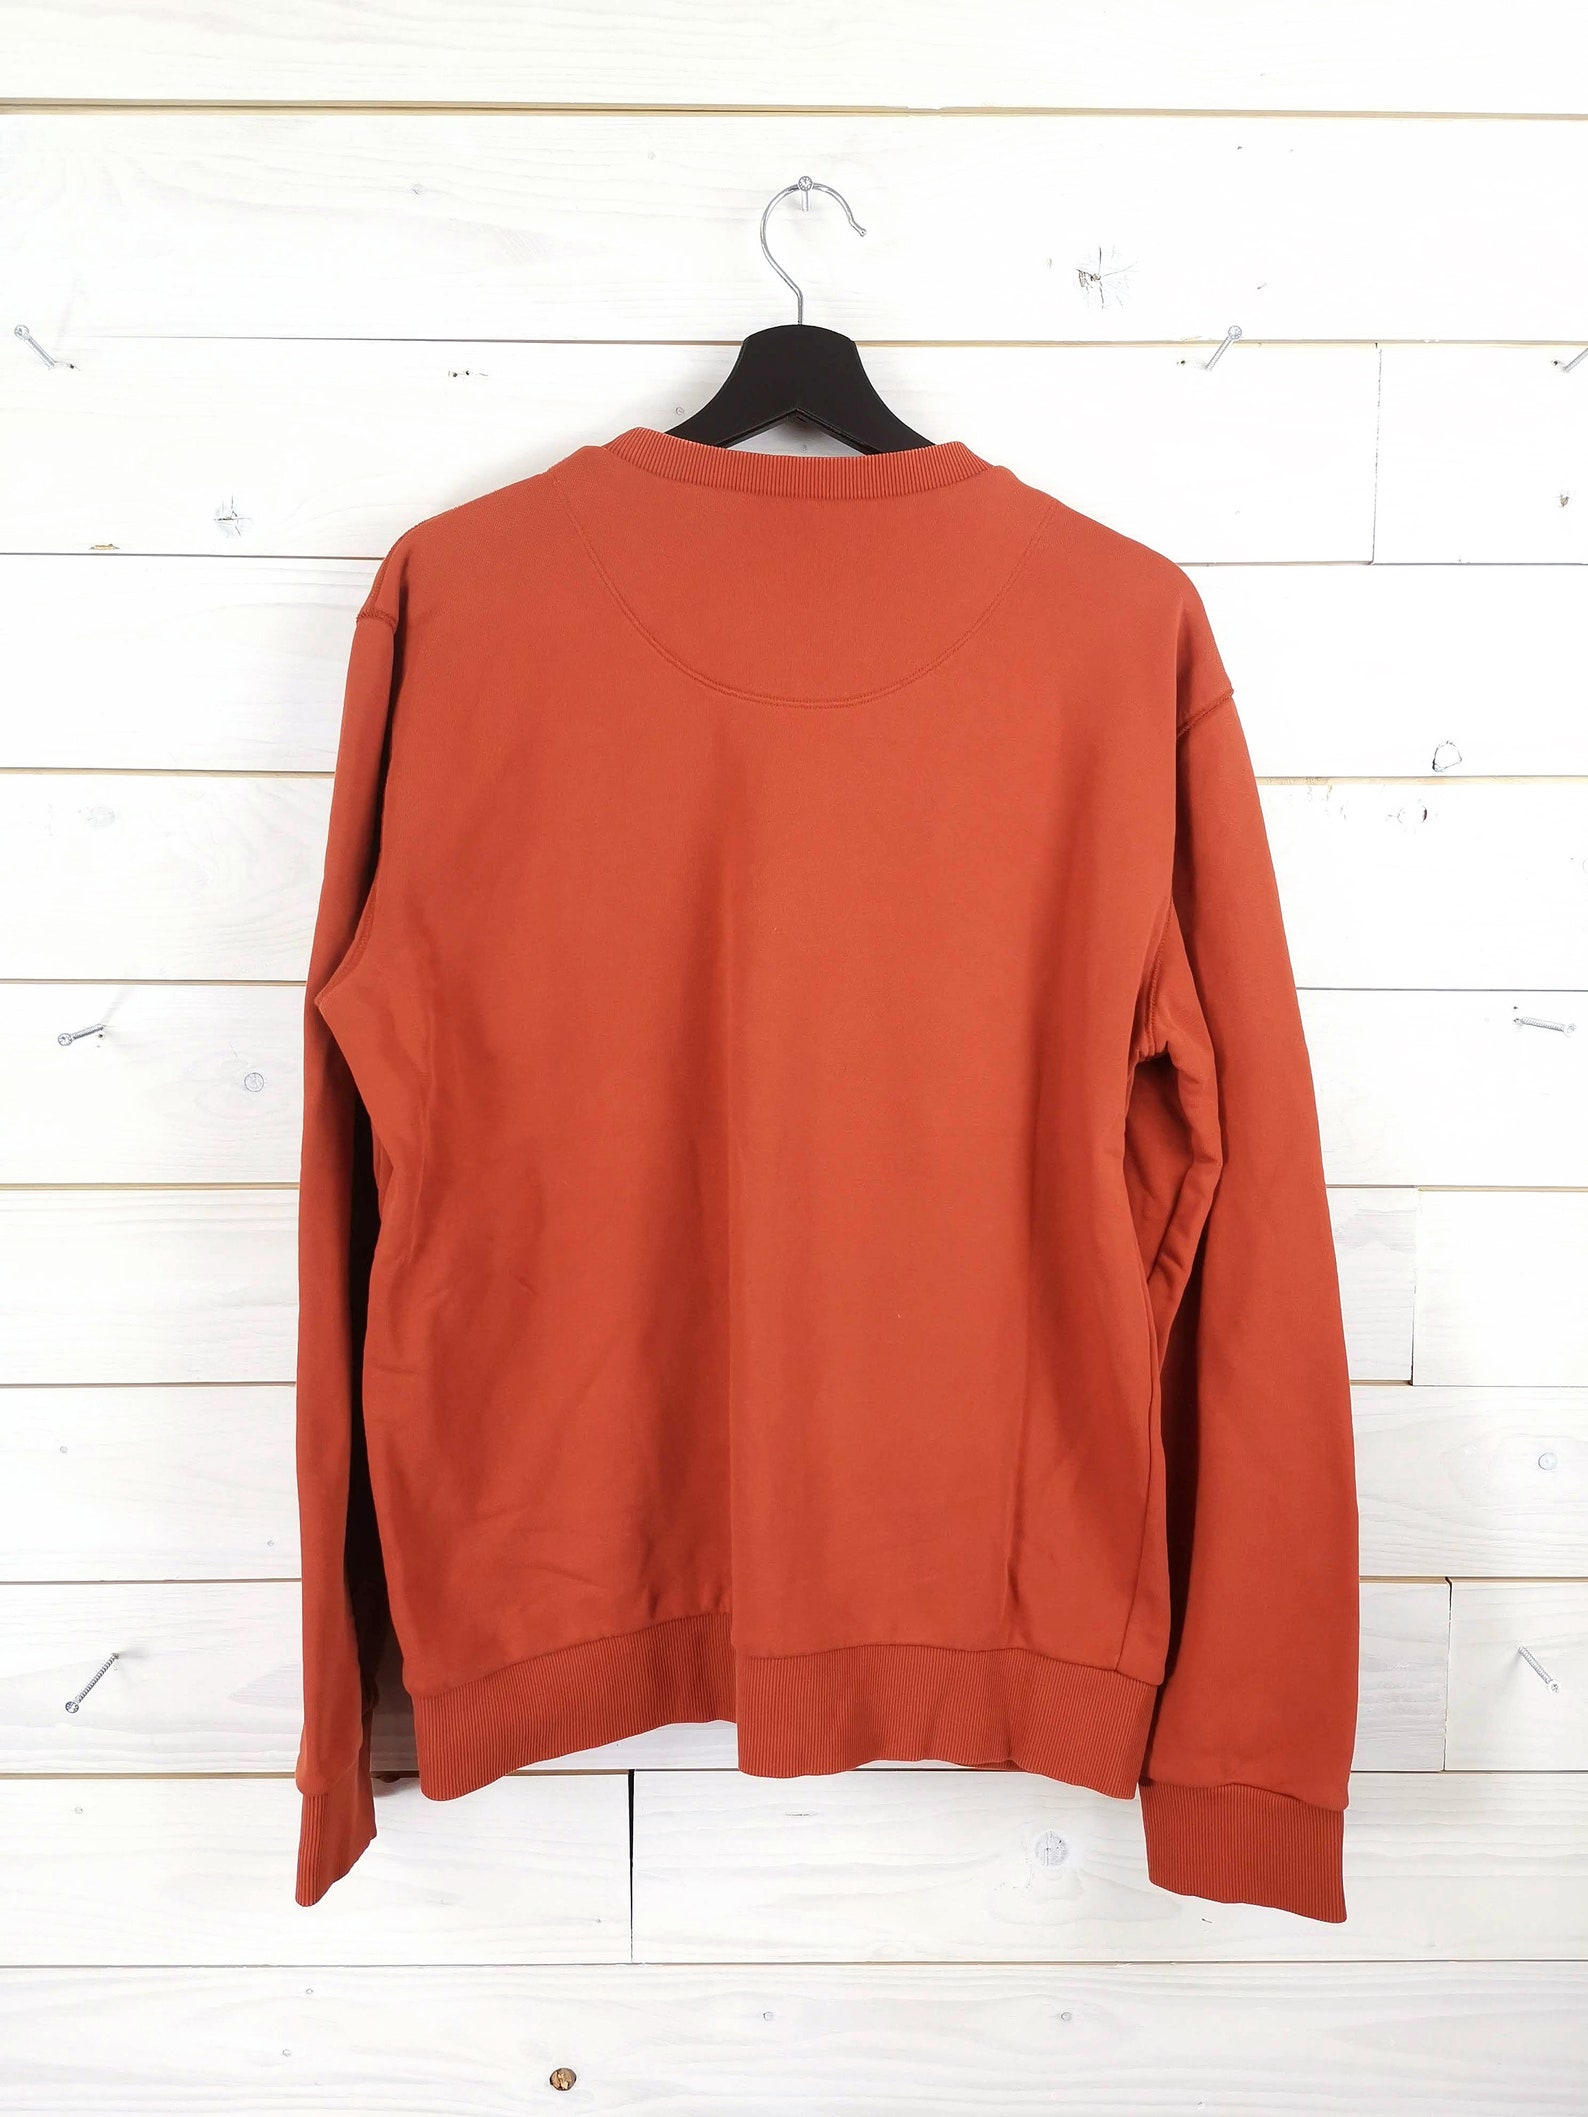 Vintage 90s HUGO BOSS Sportswear Sweater orange L long sleeves | Etsy